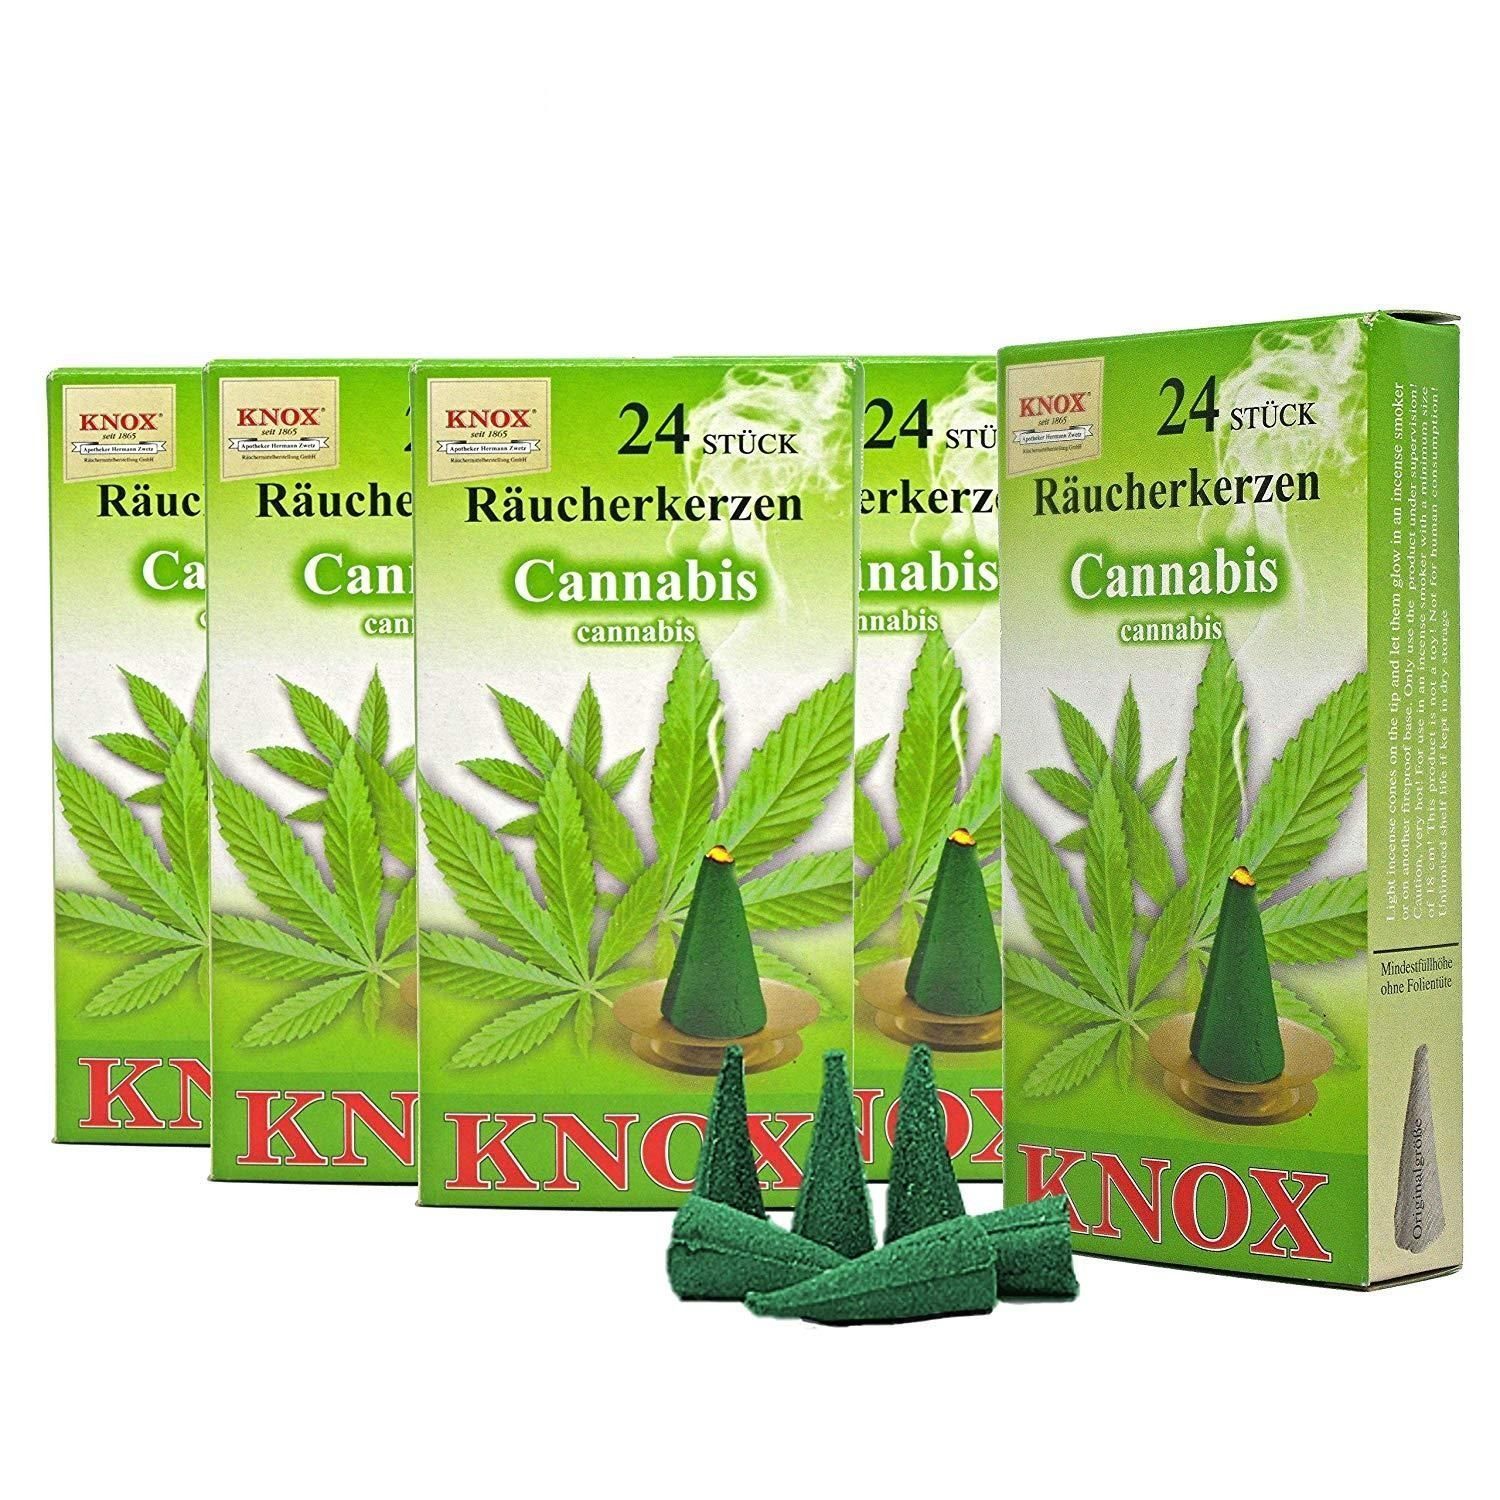 24er Cannabis Räucherkerzen- Packung - 5 Päckchen Räuchermännchen KNOX